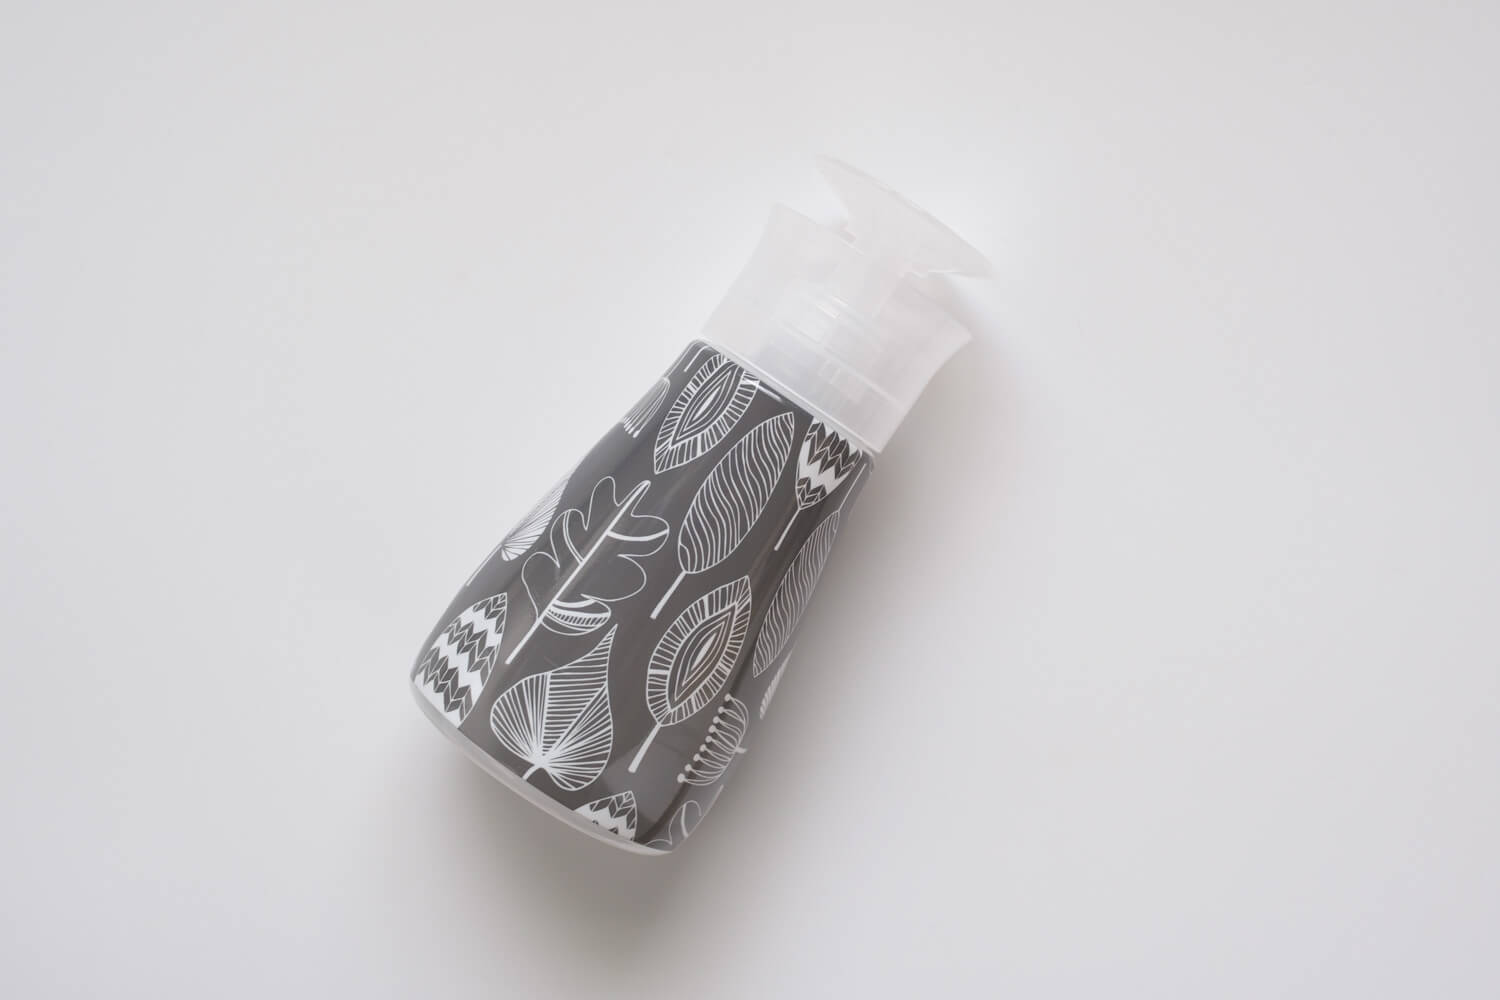 ロハコ限定デザイン カビキラー アルコール除菌 食卓用 デザインボトル